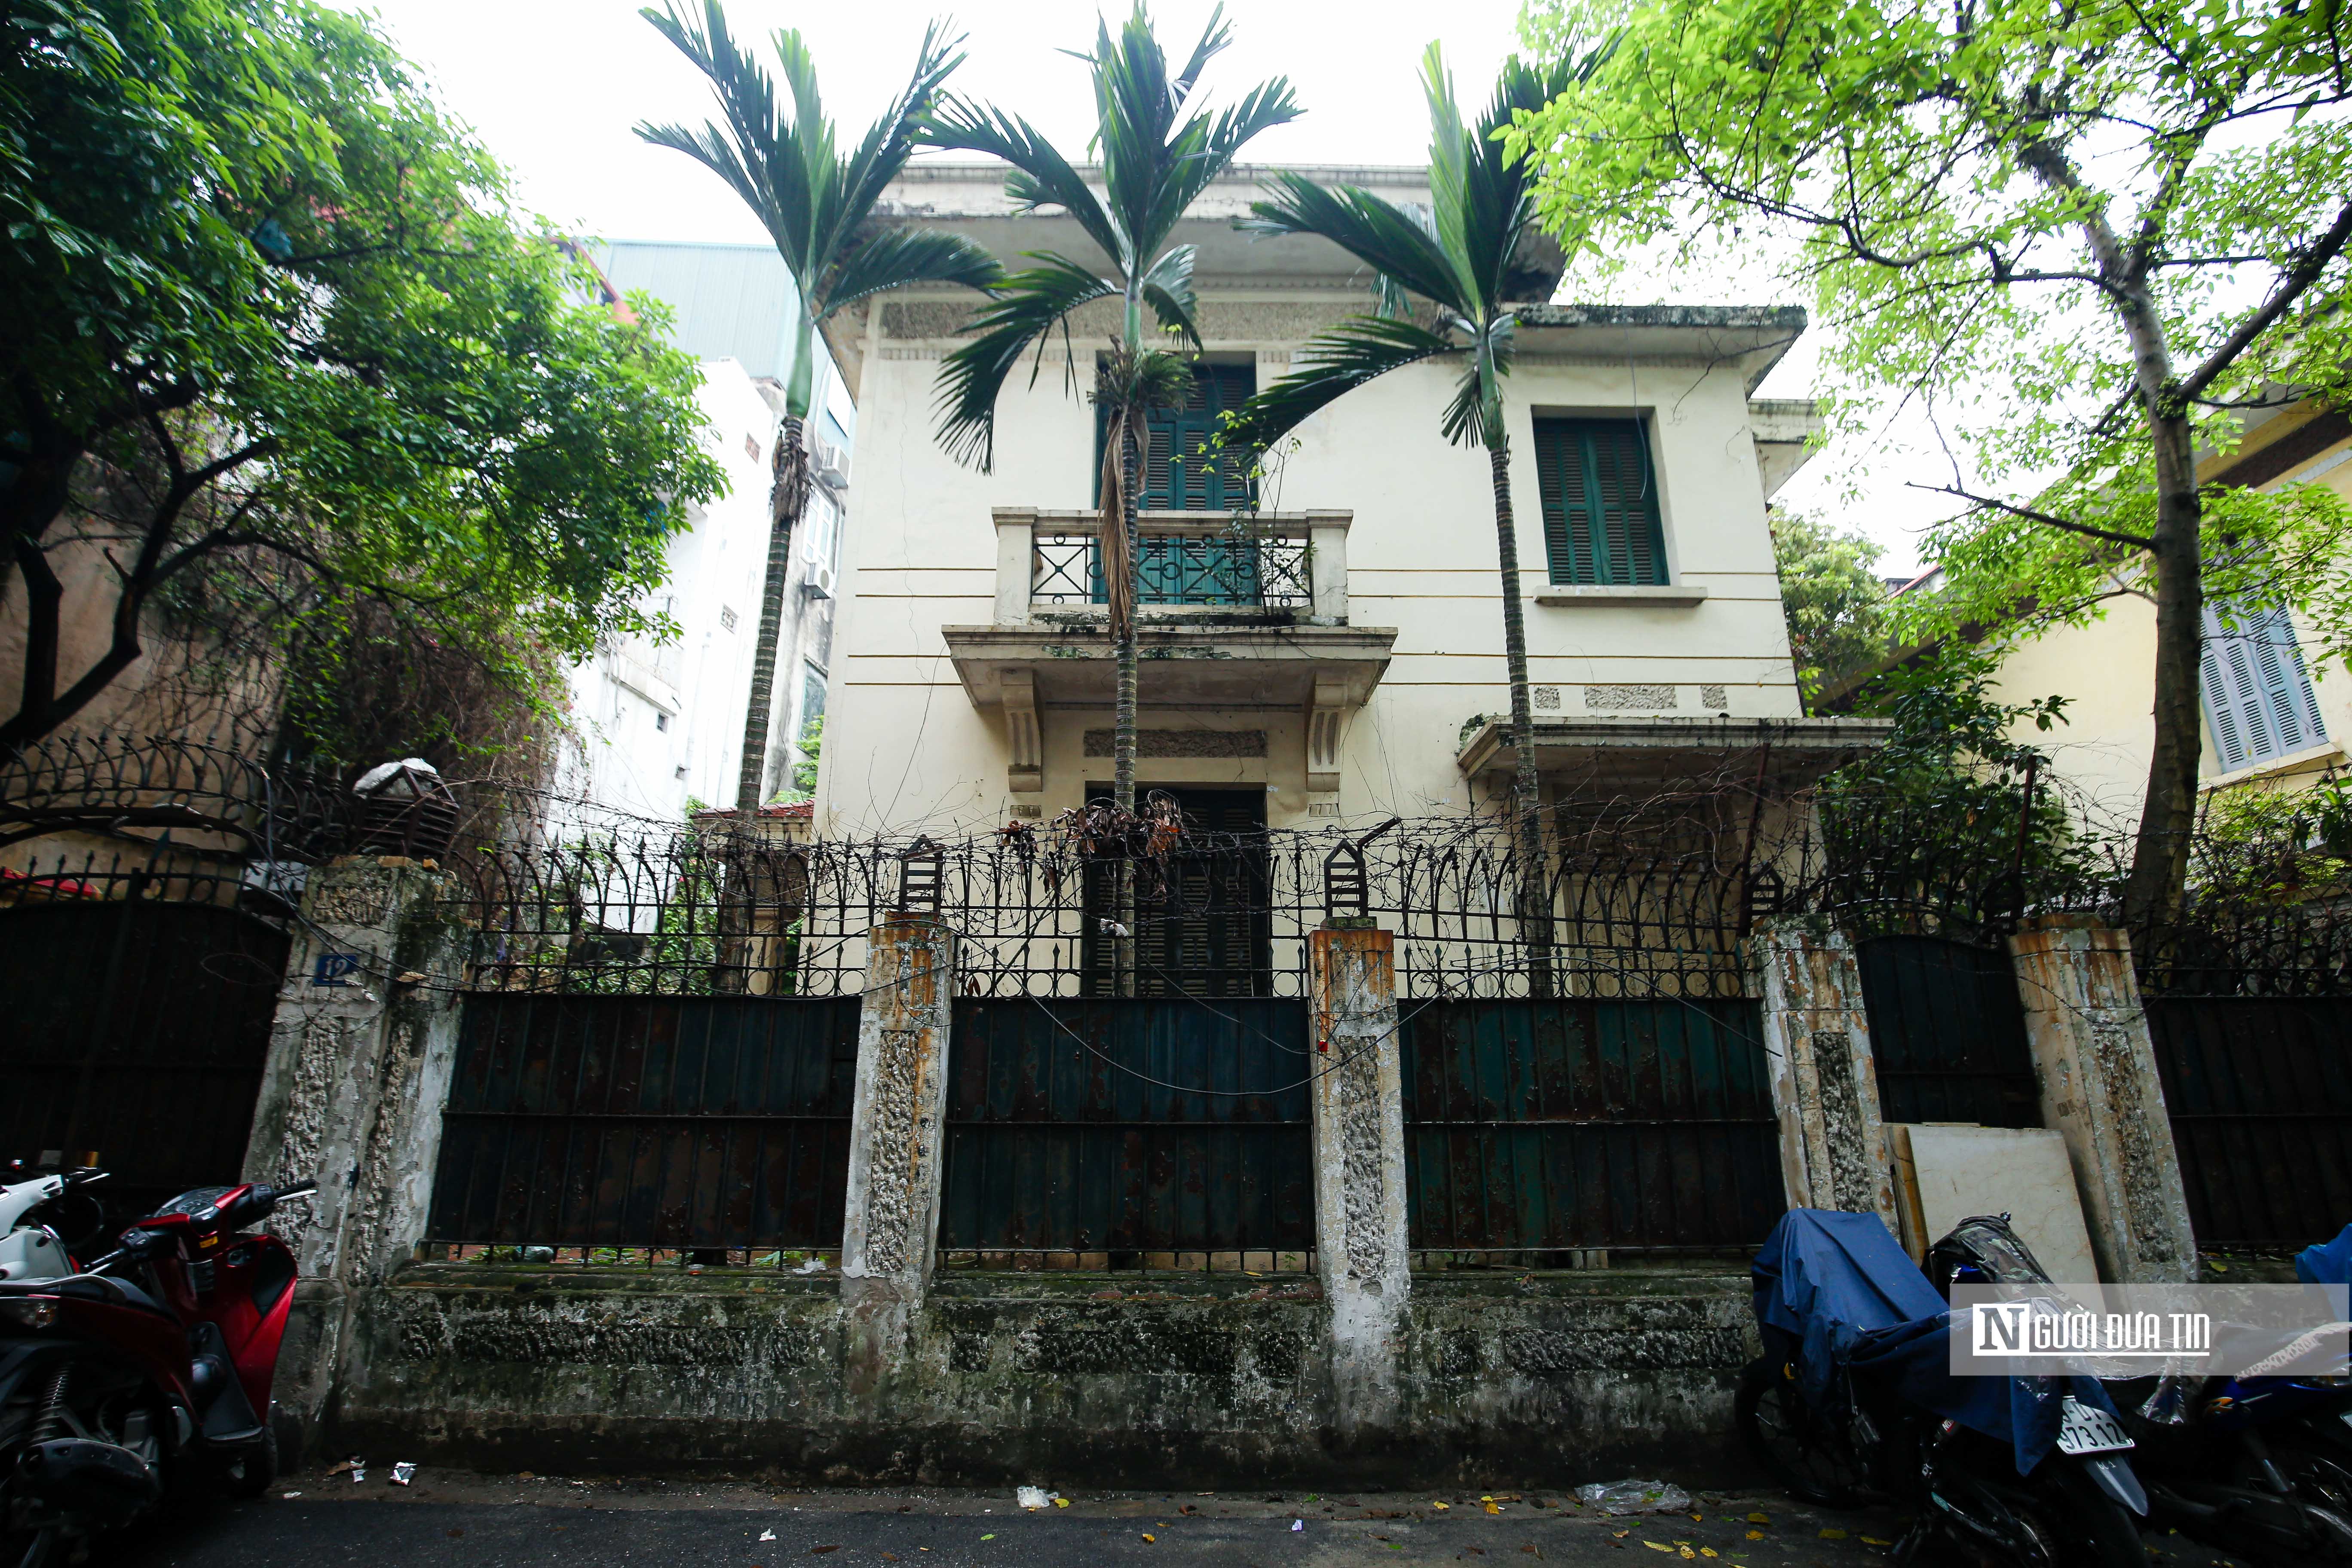 Bất động sản - Bên trong căn biệt thự từng được cựu Chủ tịch Hà Nội sử dụng